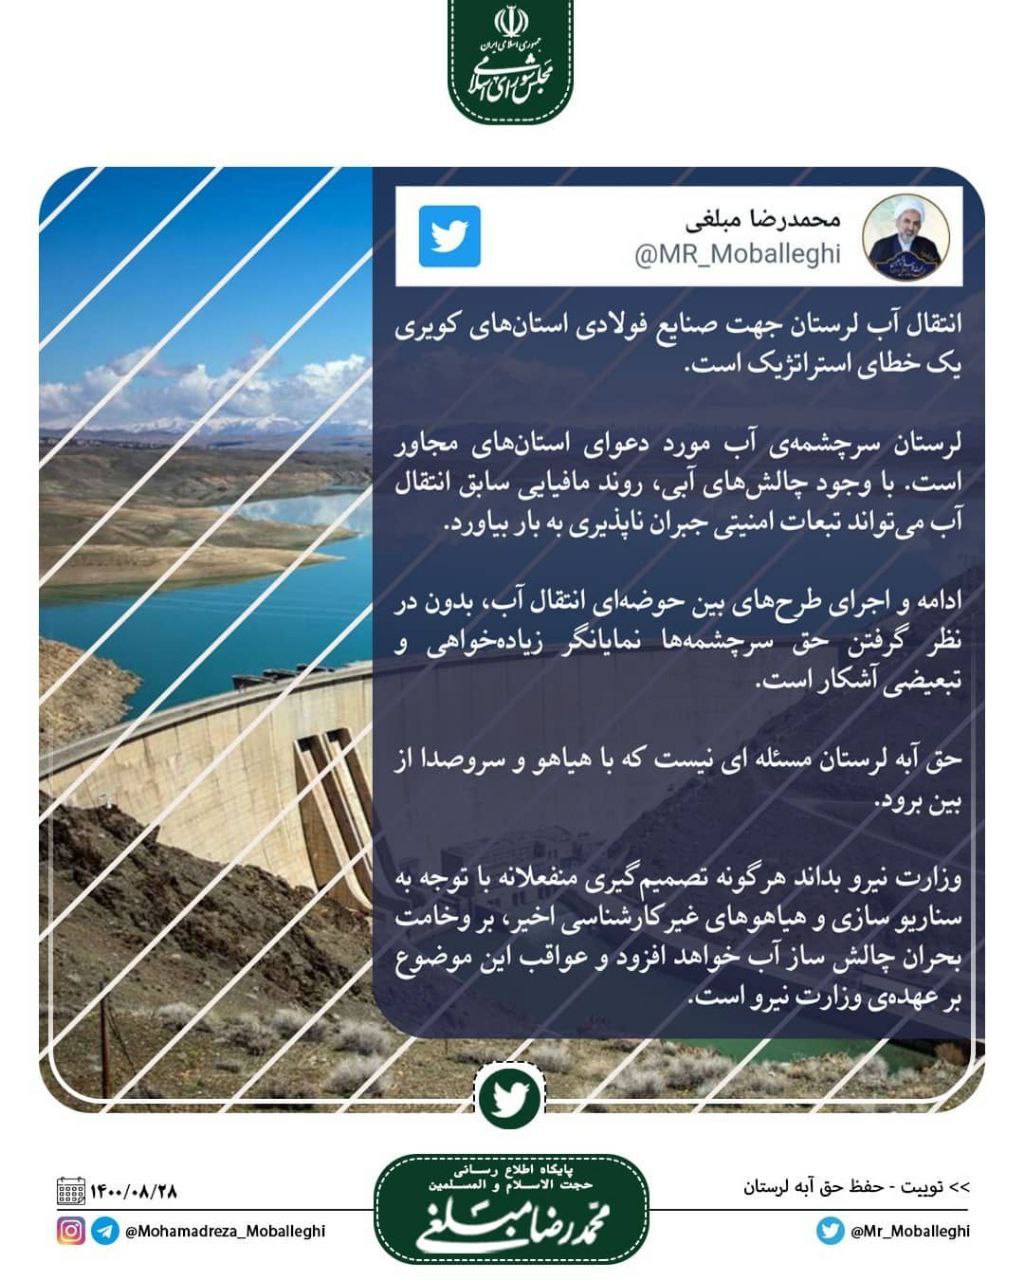 توییت مهم محمدرضا مبلغی، رئیس مجمع نمایندگان لرستان پیرامون حفظ حق آبه لرستان